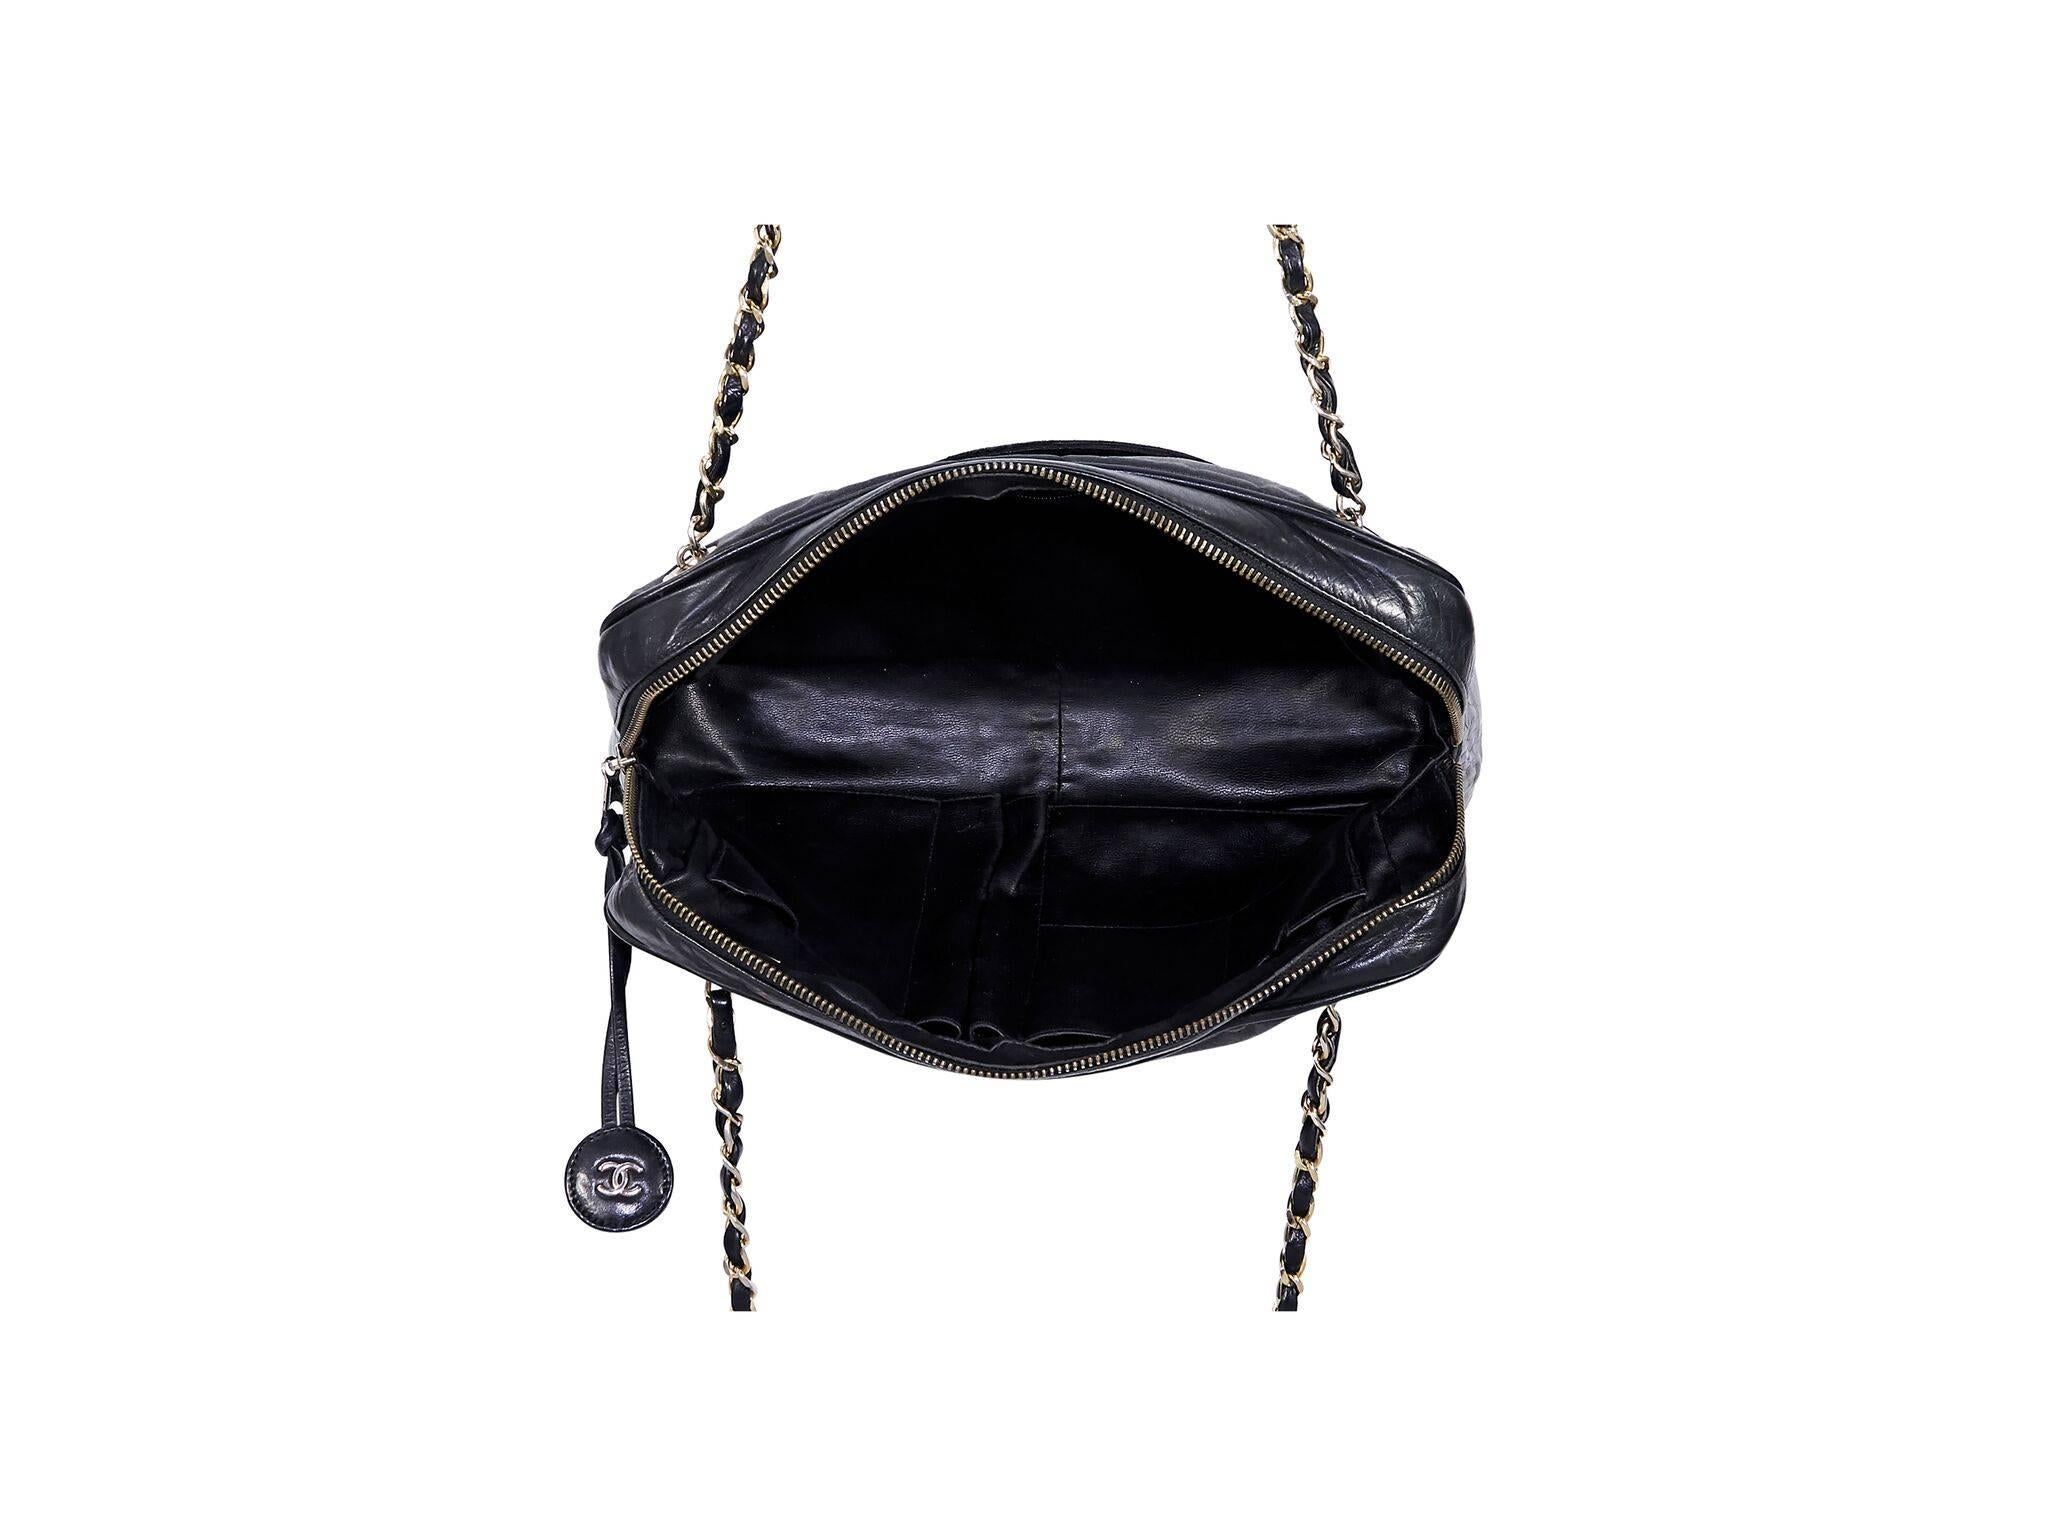 Women's Chanel Black Leather Shoulder Bag